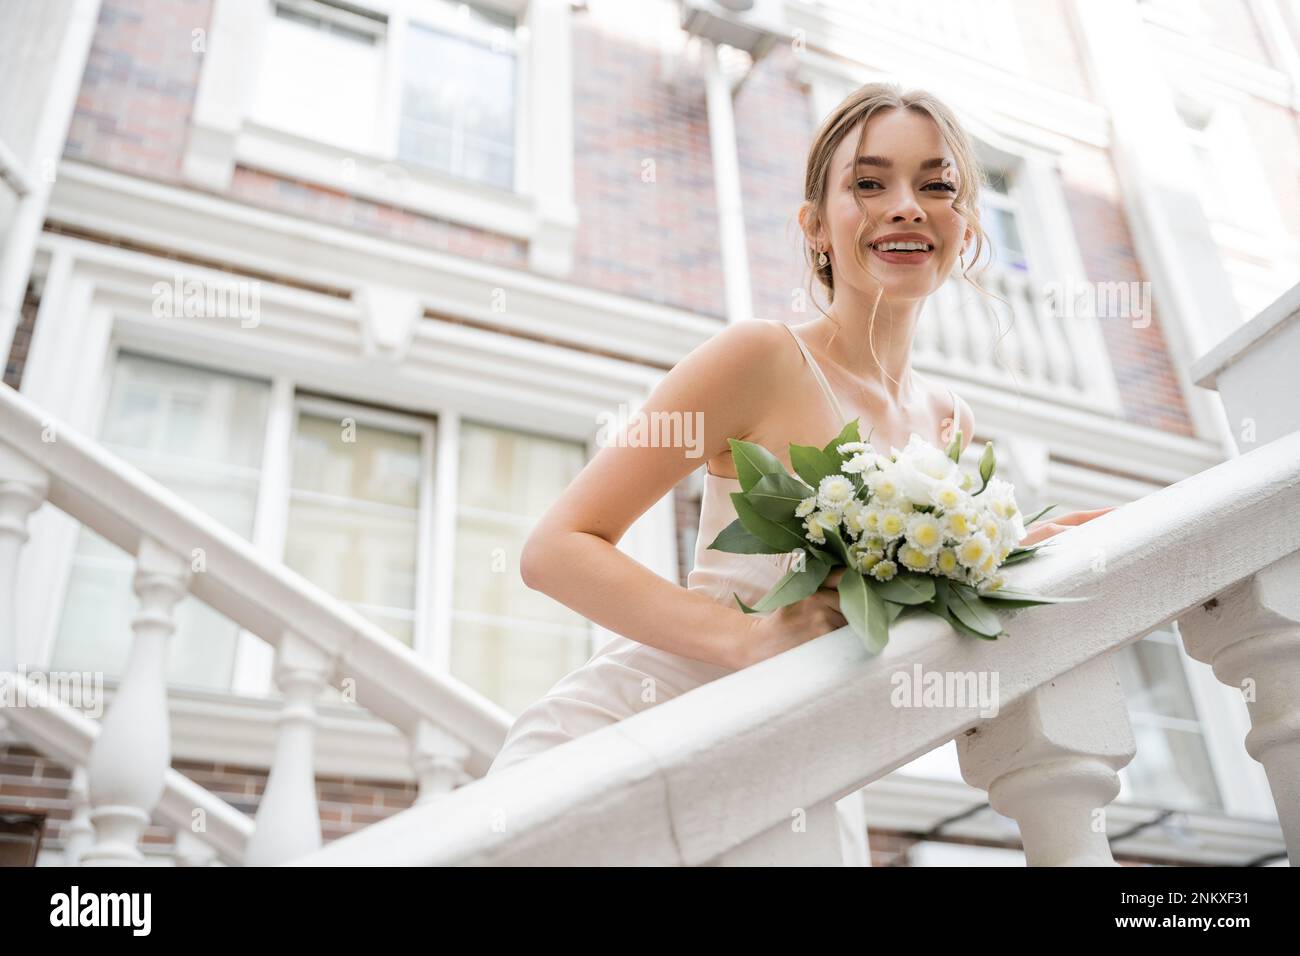 Blick auf die glückliche Braut im Hochzeitskleid mit Blumenstrauß und Blick auf die Kamera in der Nähe des Hauses, Stockbild Stockfoto